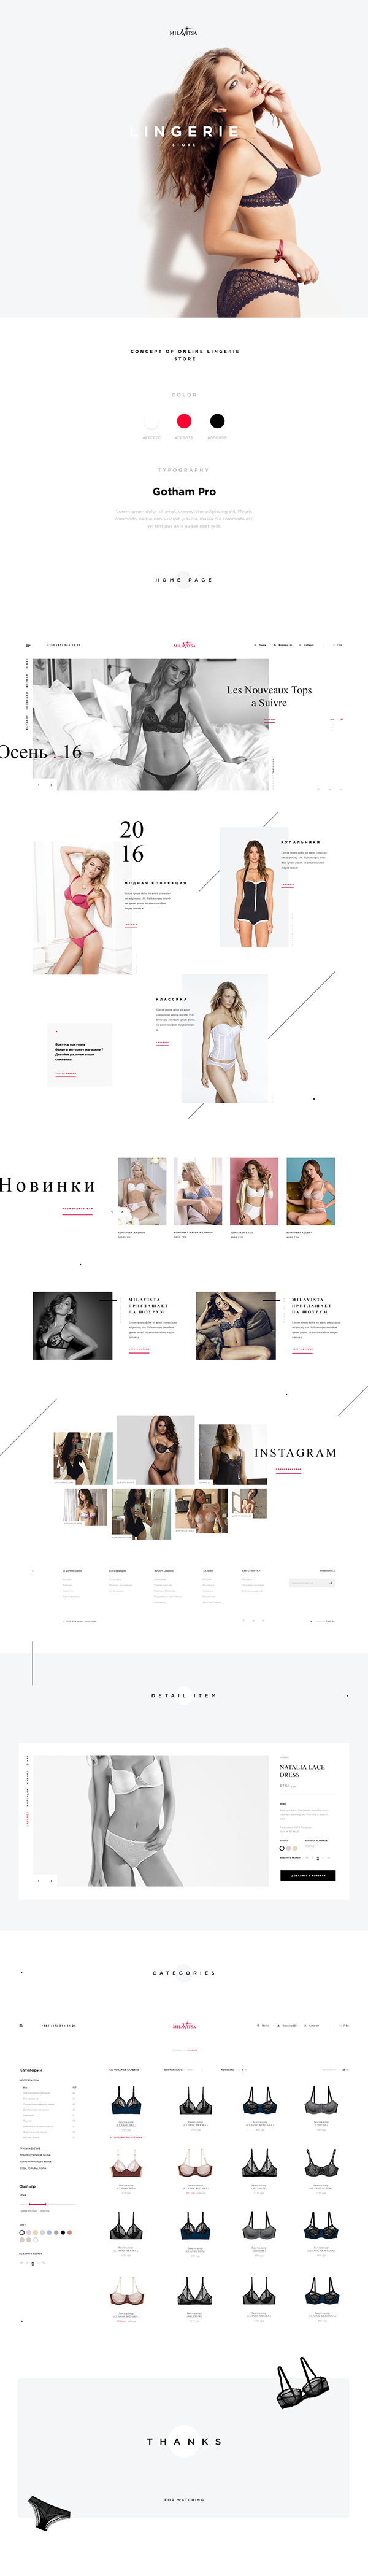 Women's Underwear & Lingerie Store Online